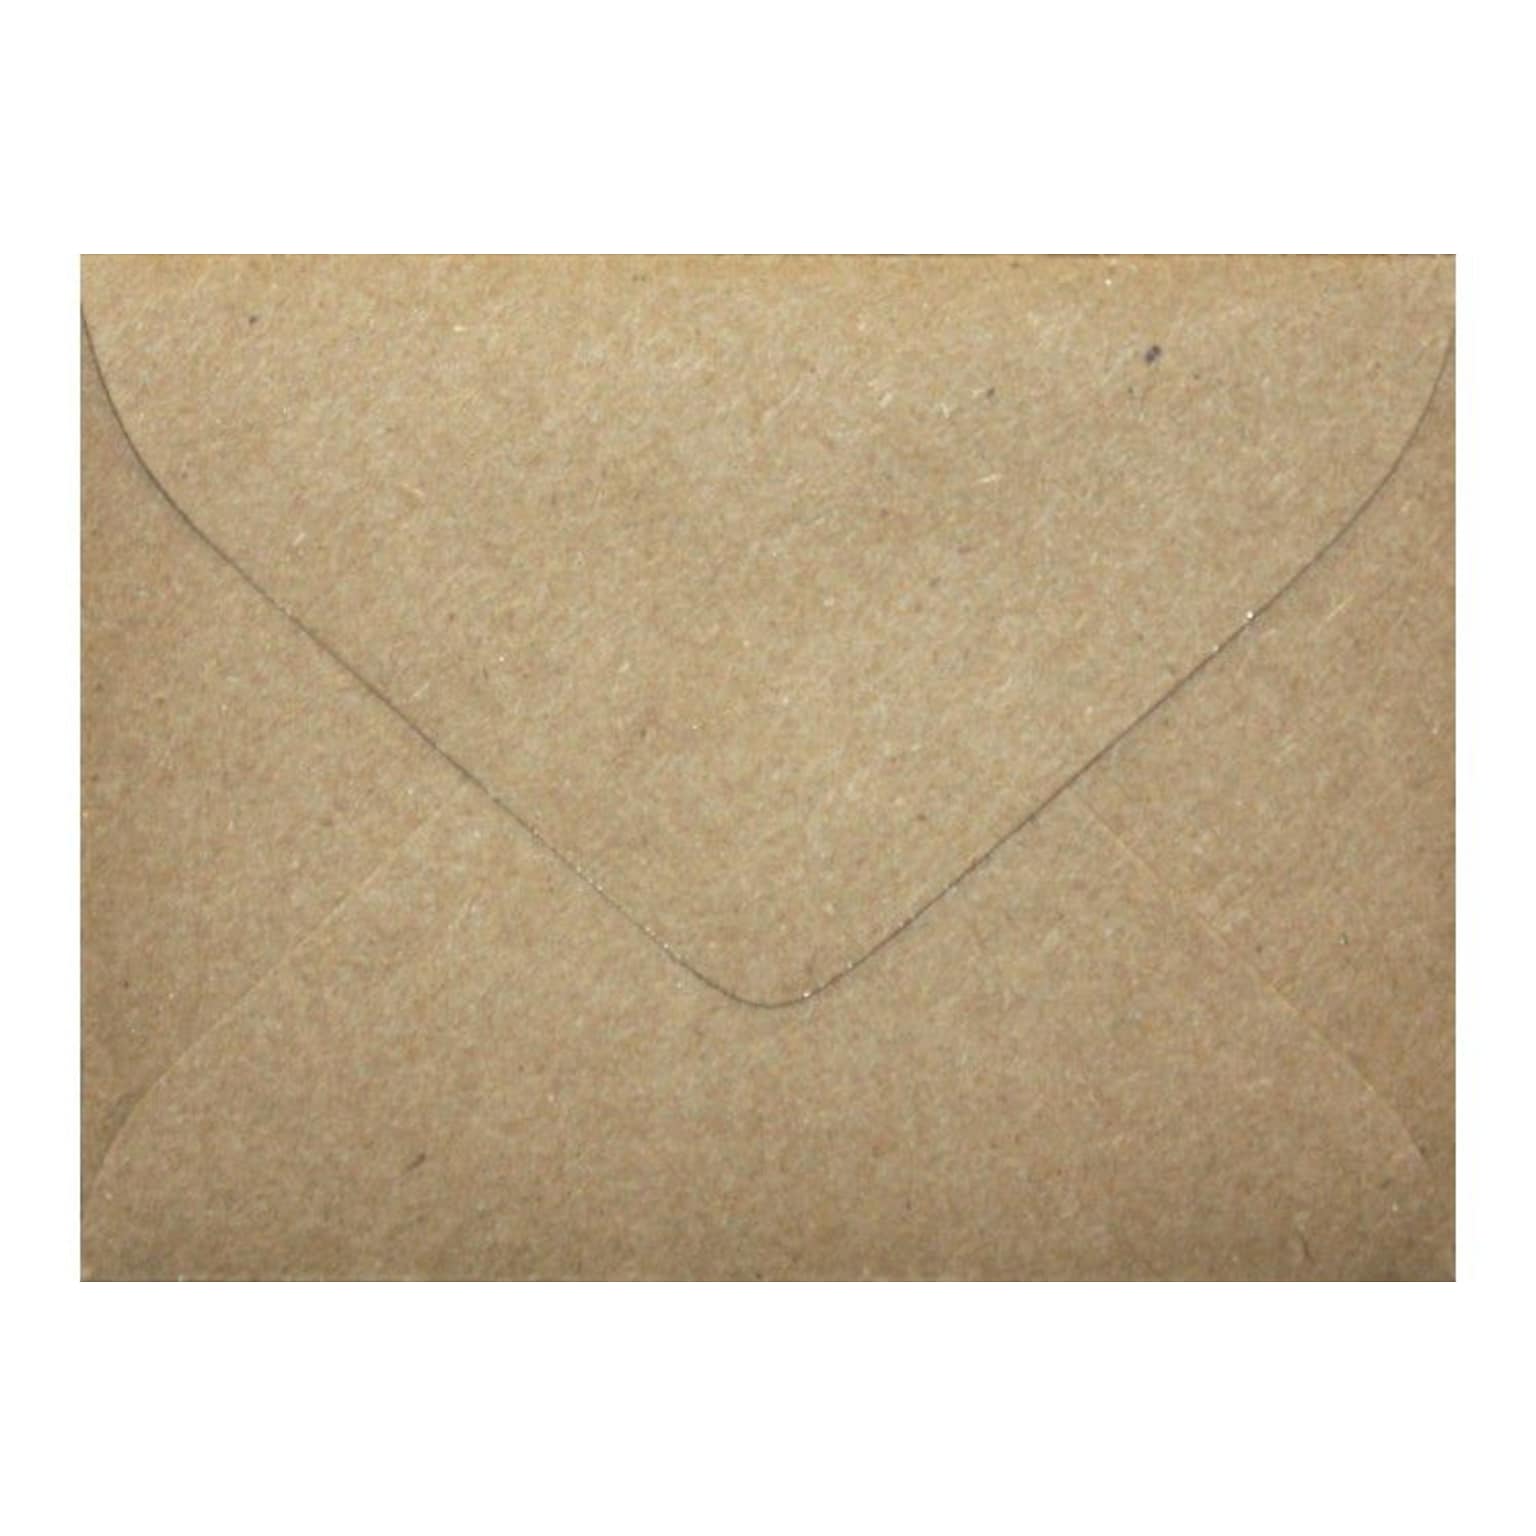 LUX #17 Mini Envelope (2 11/16 x 3 11/16) 250/Box, Grocery Bag (LEVC-GB-250)